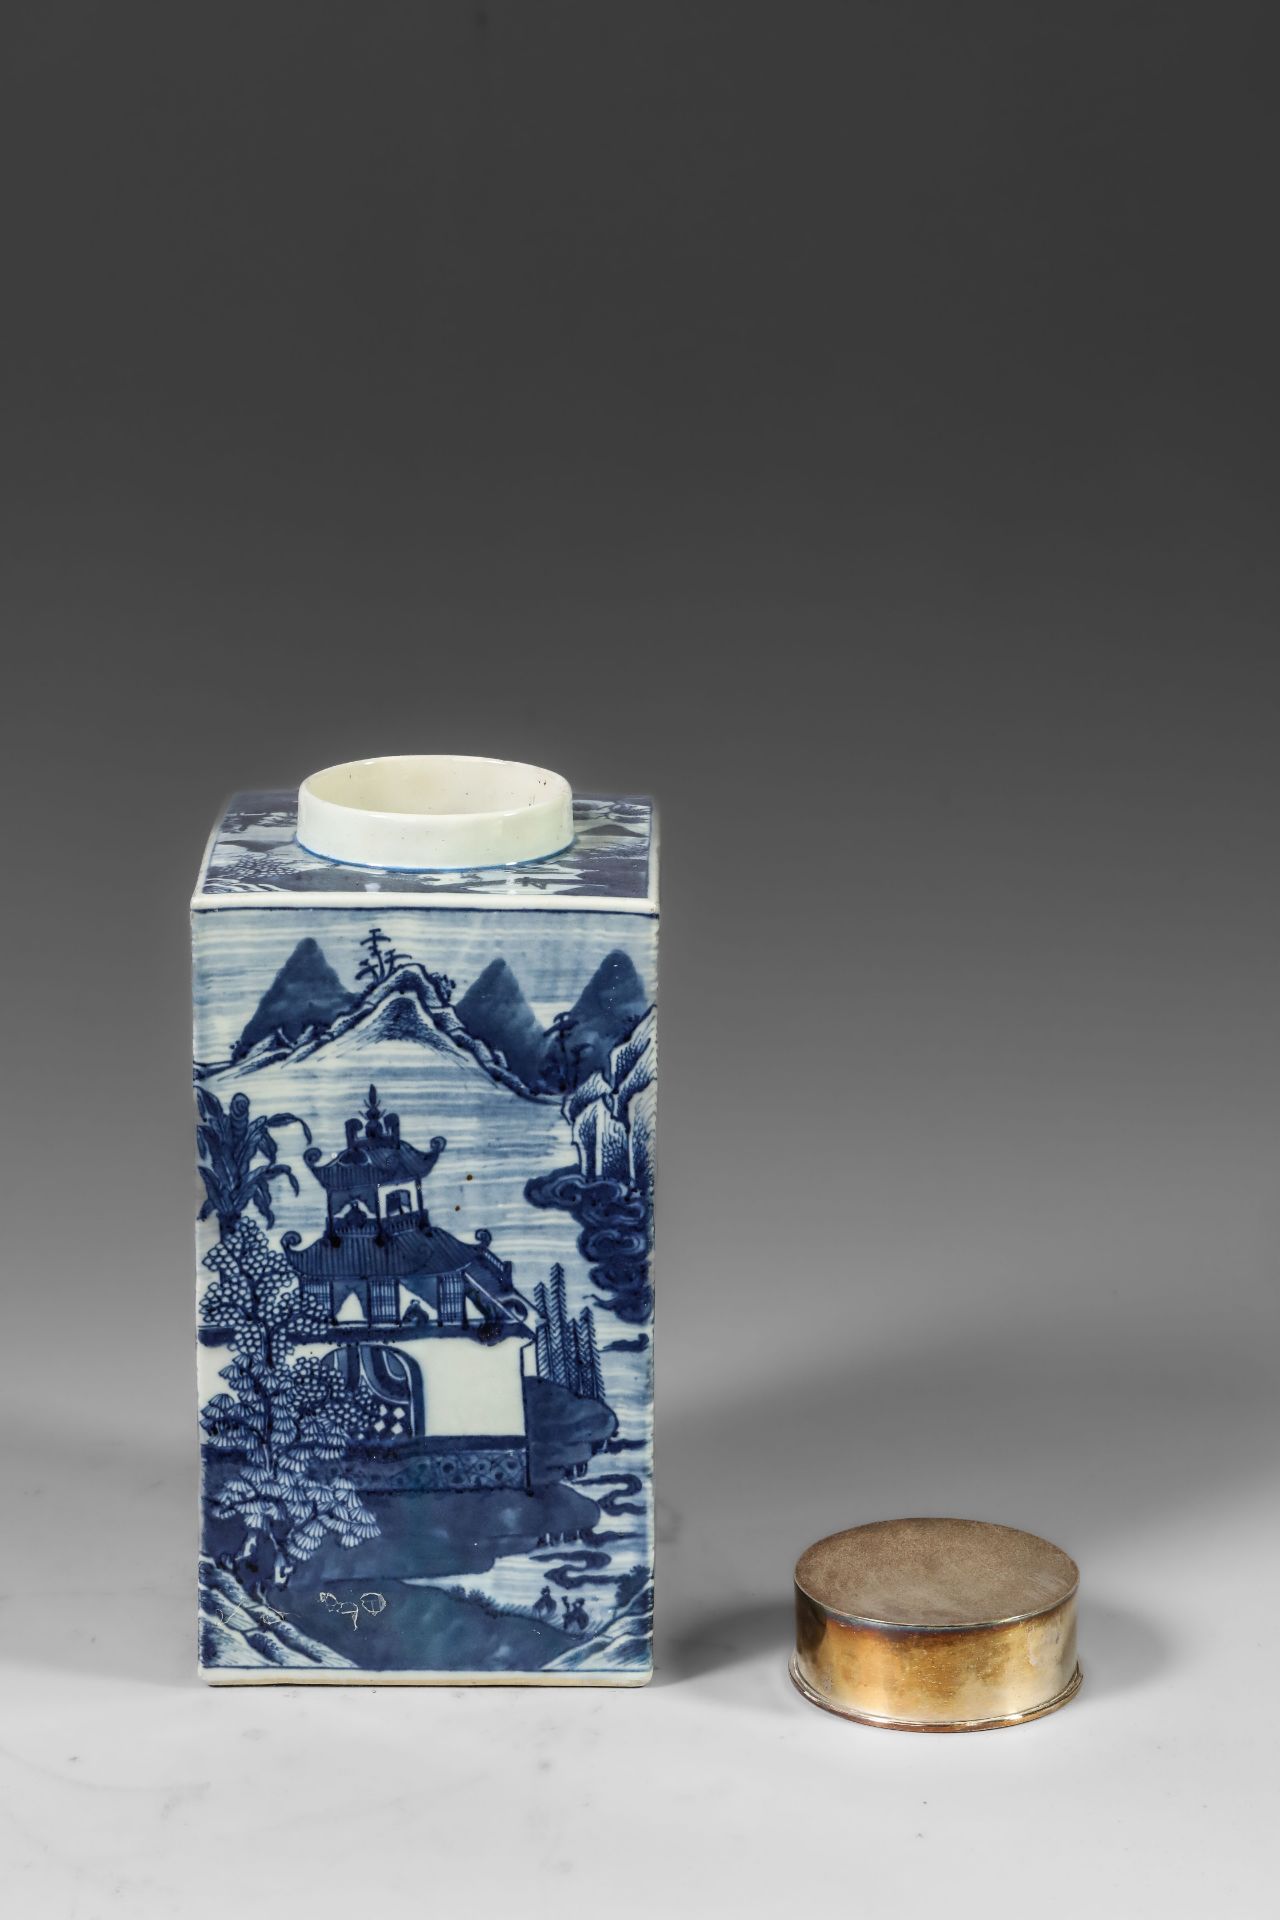 Suite de neuf pots à thé quadrangulaire en porcelaine blanche décoré en bleu sous couverte de - Image 9 of 47